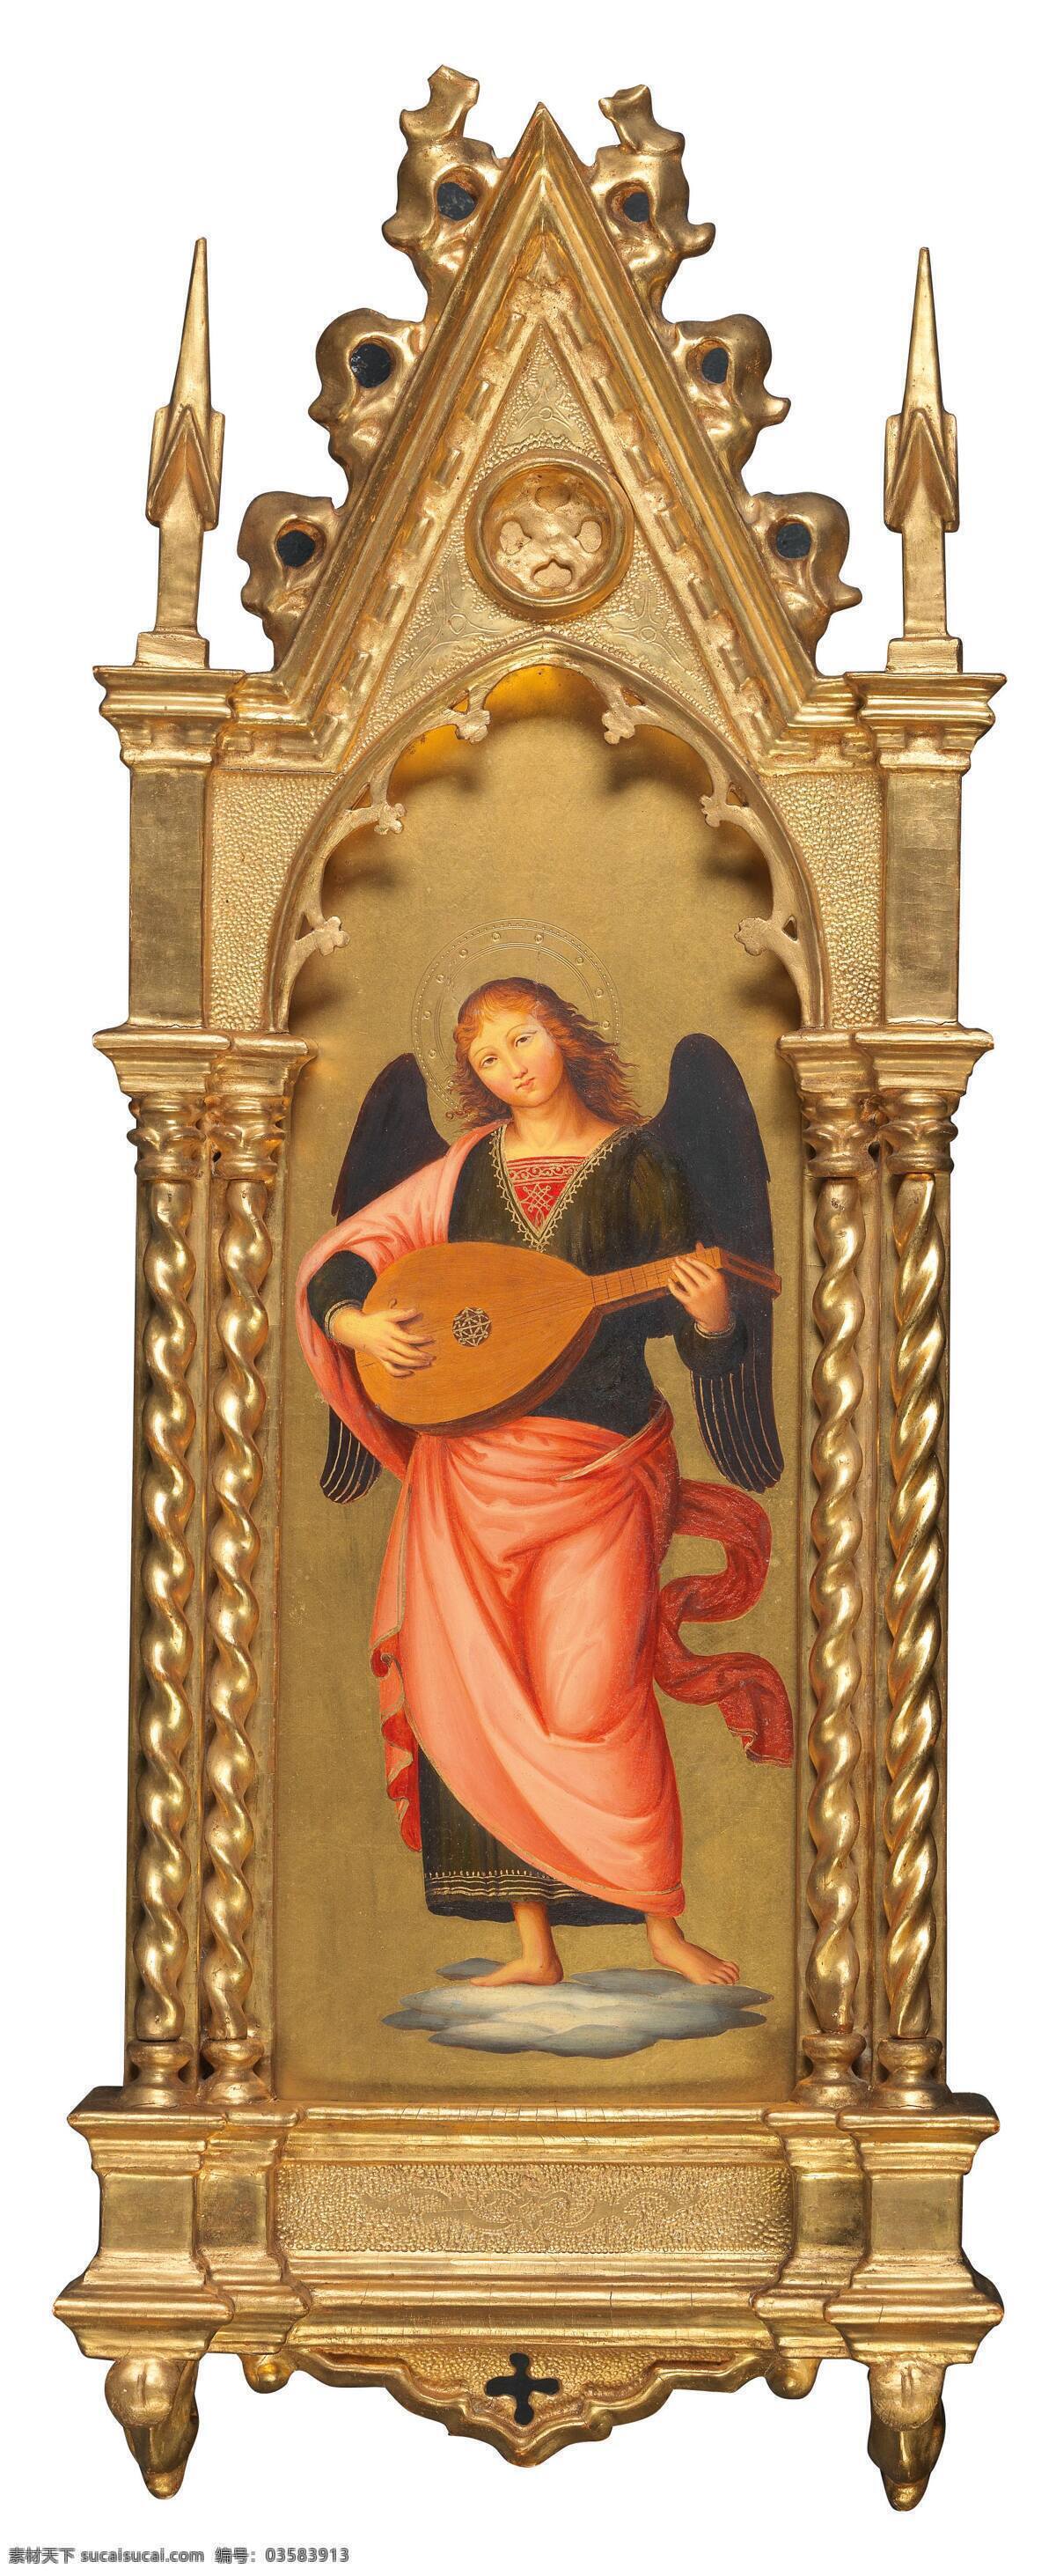 宗教油画 仿意大利画家 安吉利科作品 圣经故事 大天使 弹吉他 19世纪油画 油画 文化艺术 绘画书法